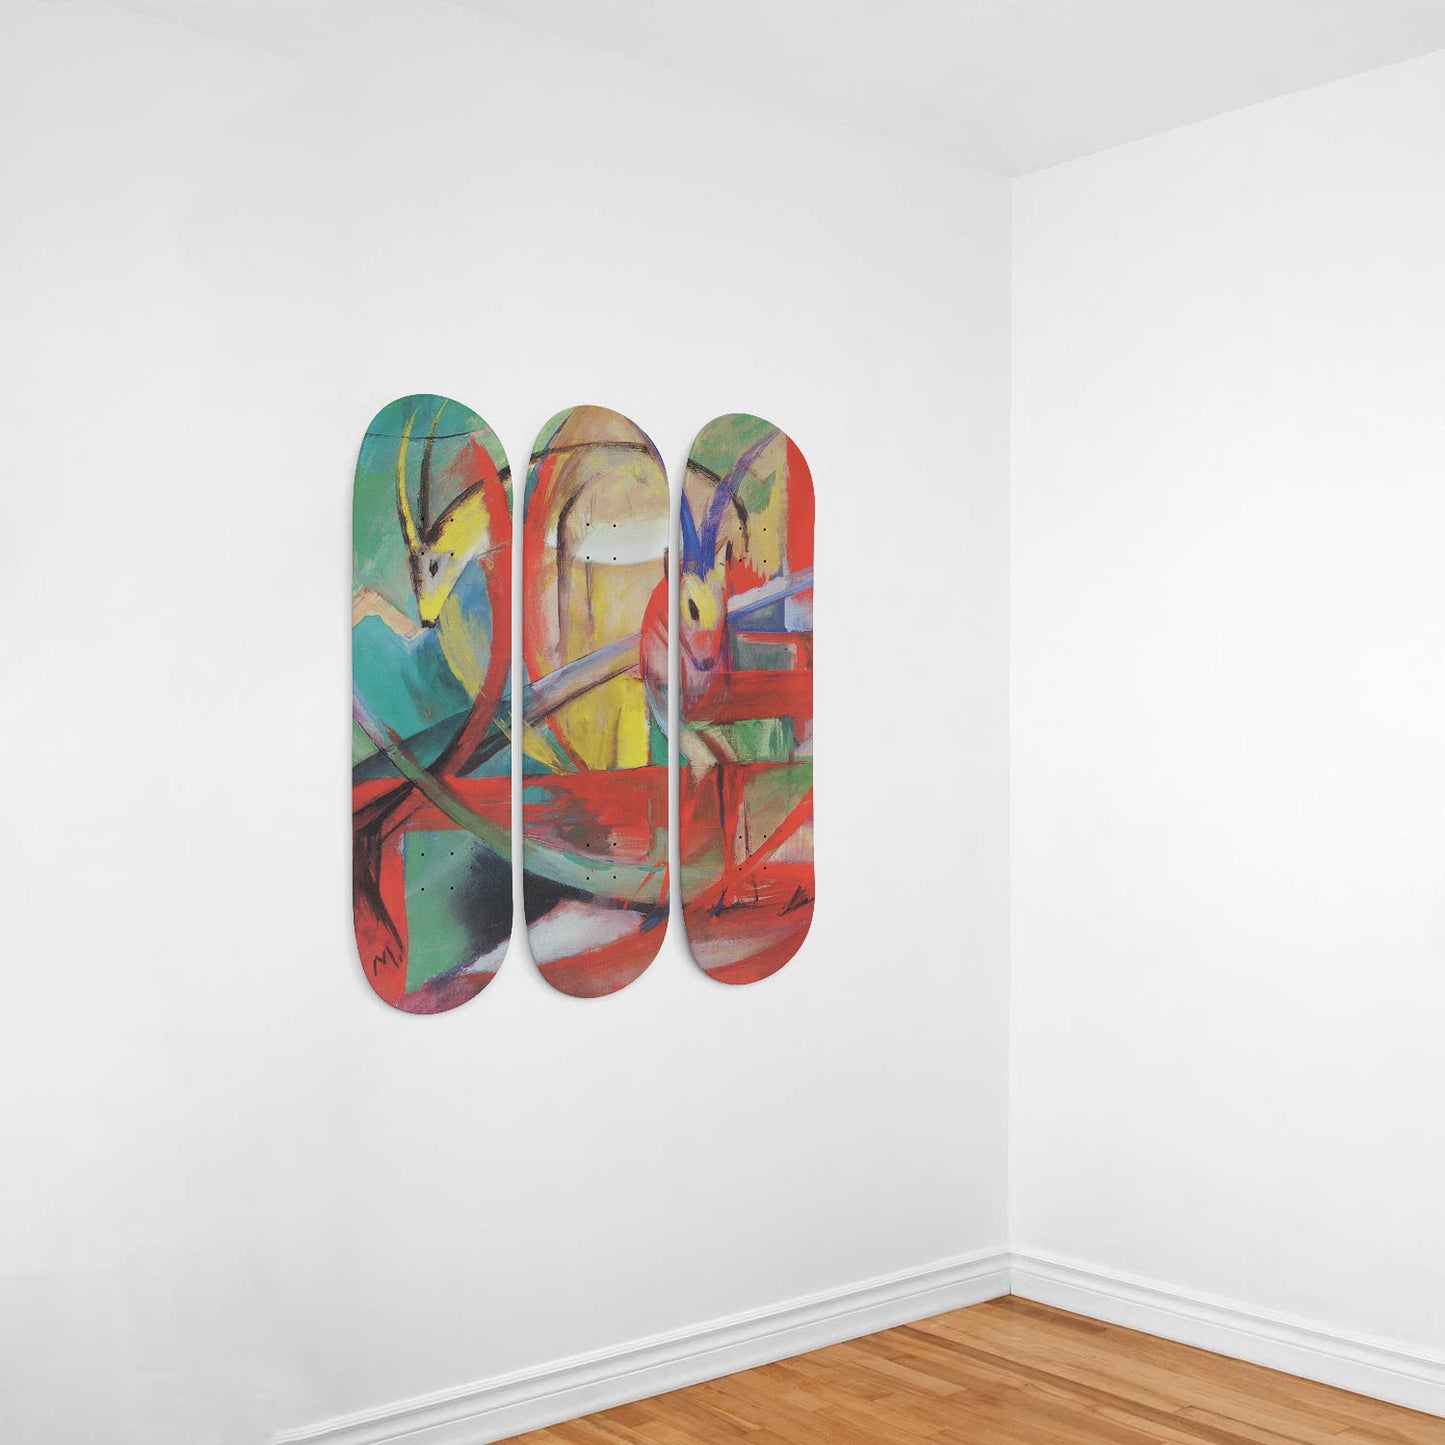 Franz Marc - Gazelles - 3-piece Skateboard Wall Art